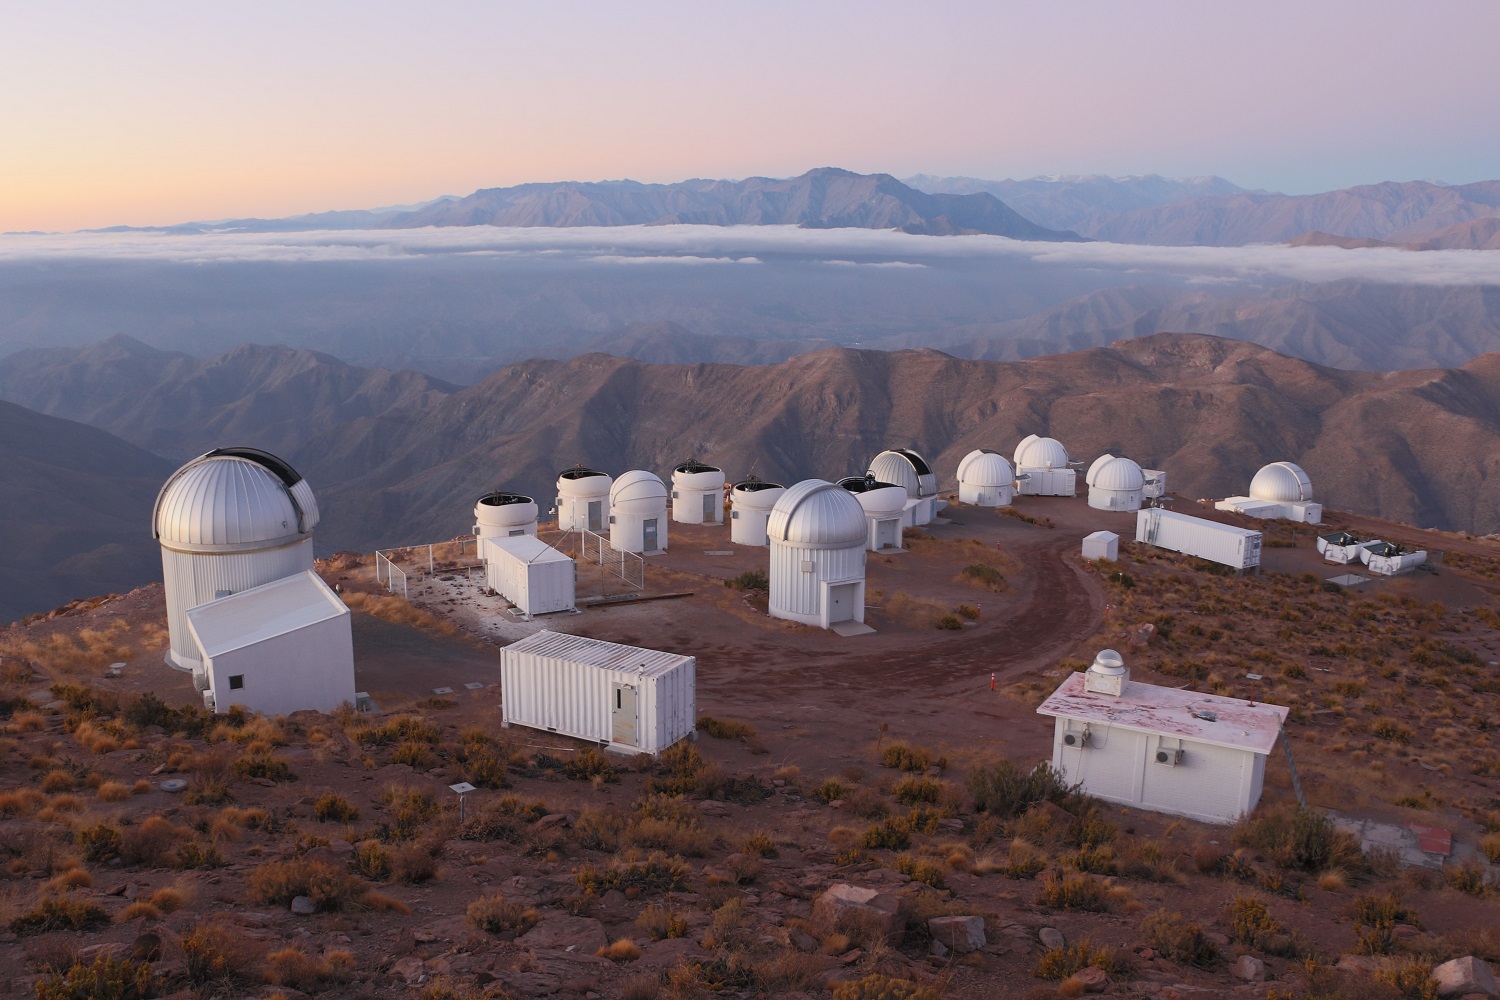 Observatório Interamericano de Cerro Tololo no qual está o telescópio T80-S. (fotos: Favio Faifer)